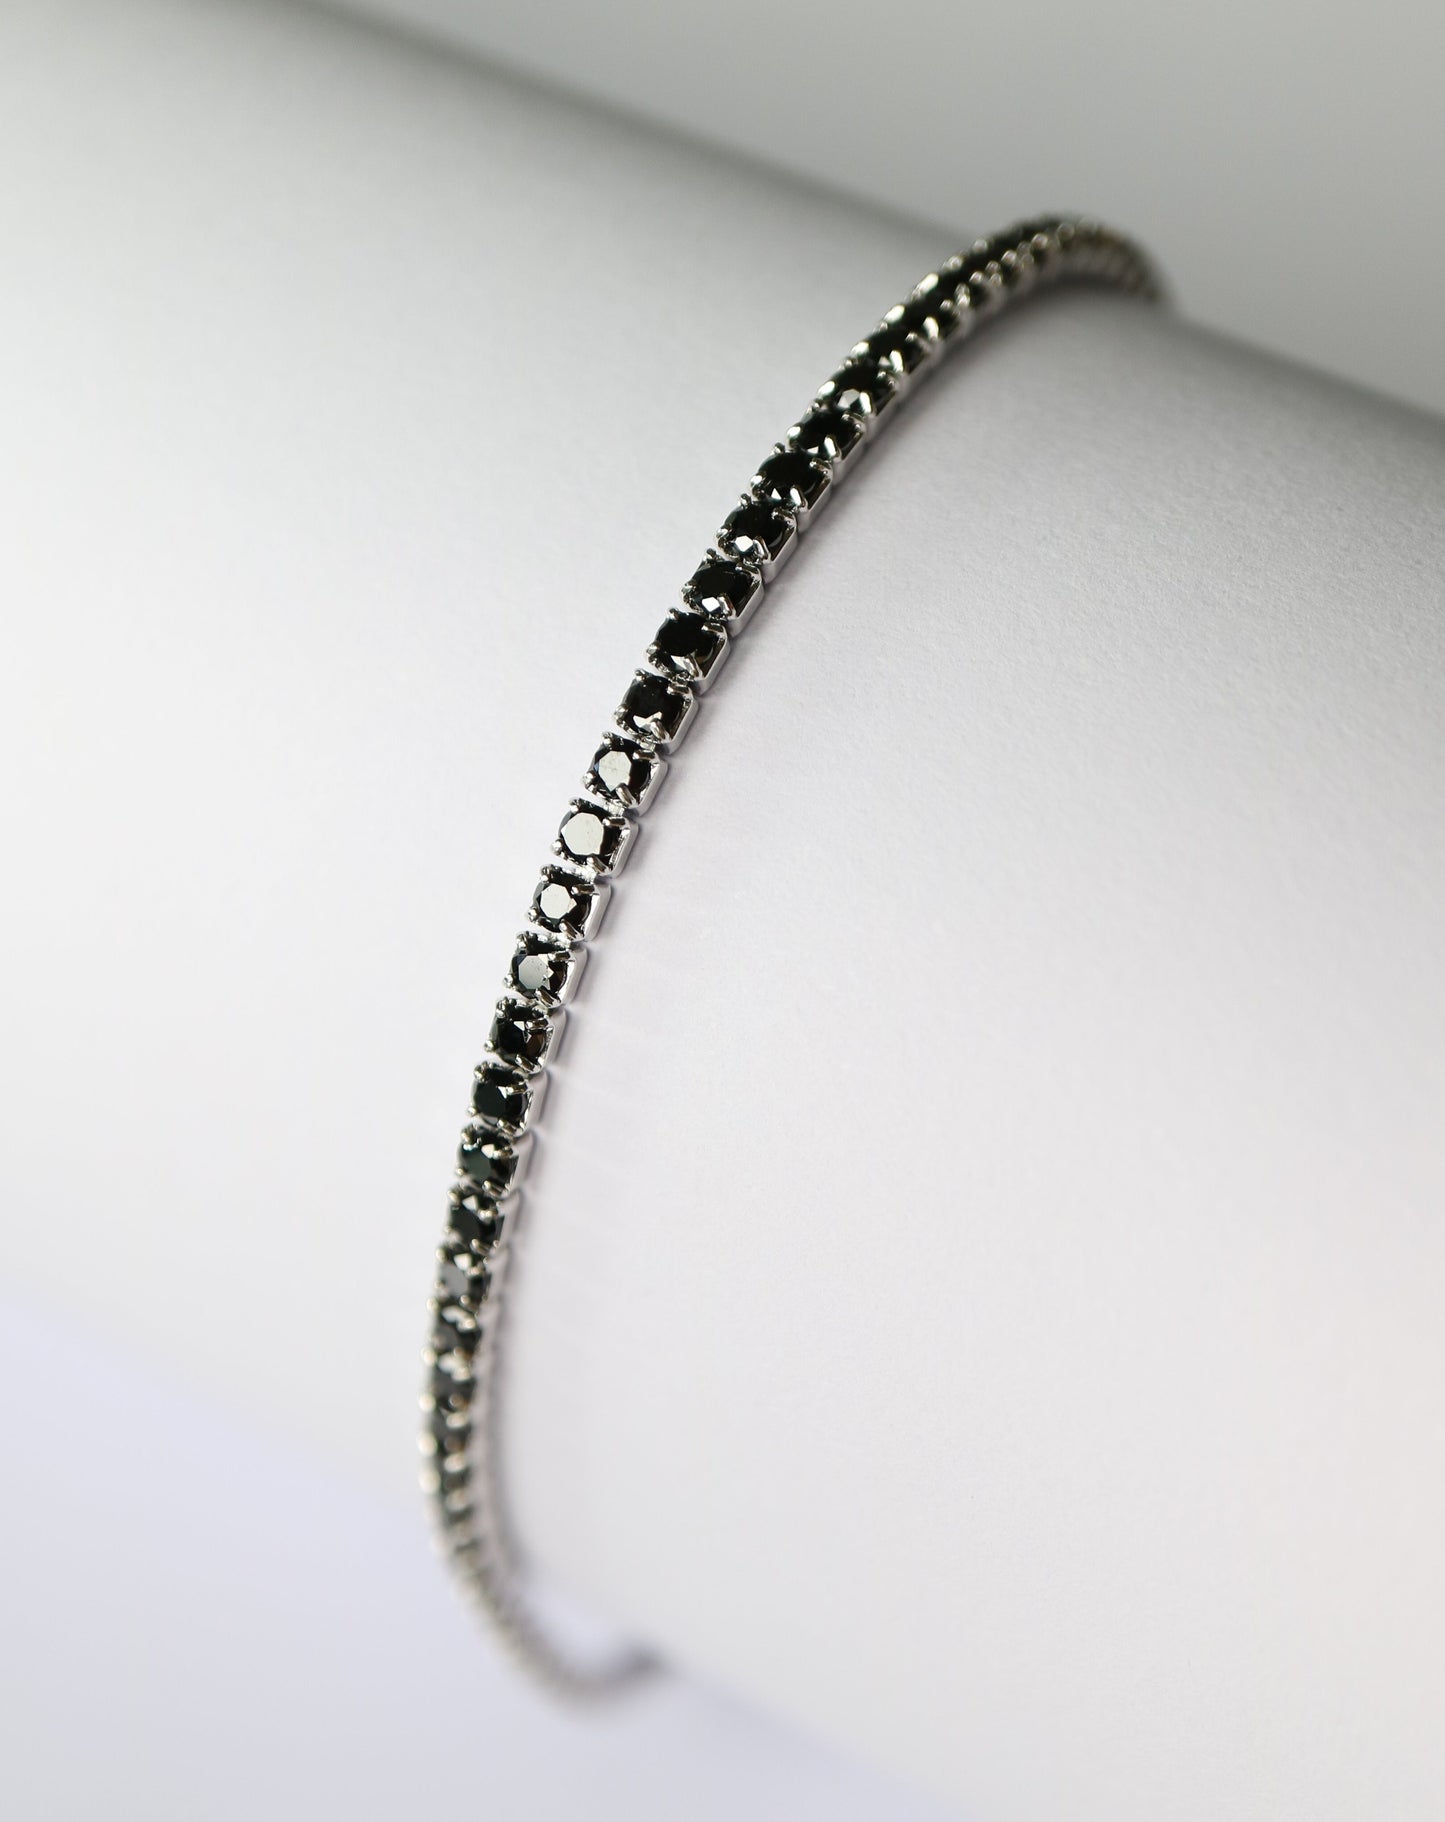 Skinny Tennis Bracelet black gemstones in sterling silver